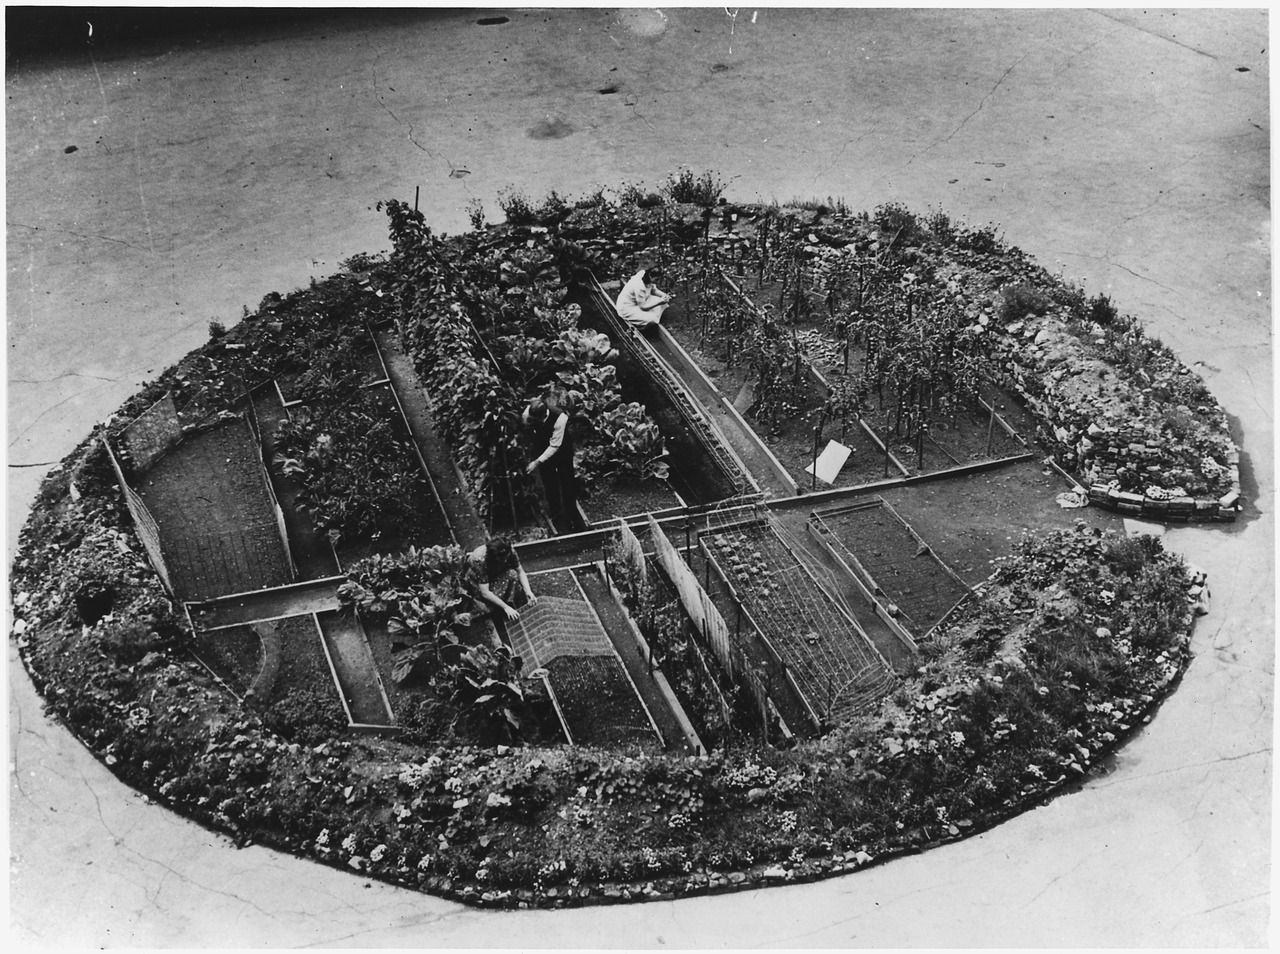 Сад перемоги у воронці від бомби в Лондоні під час Другої світової війни.